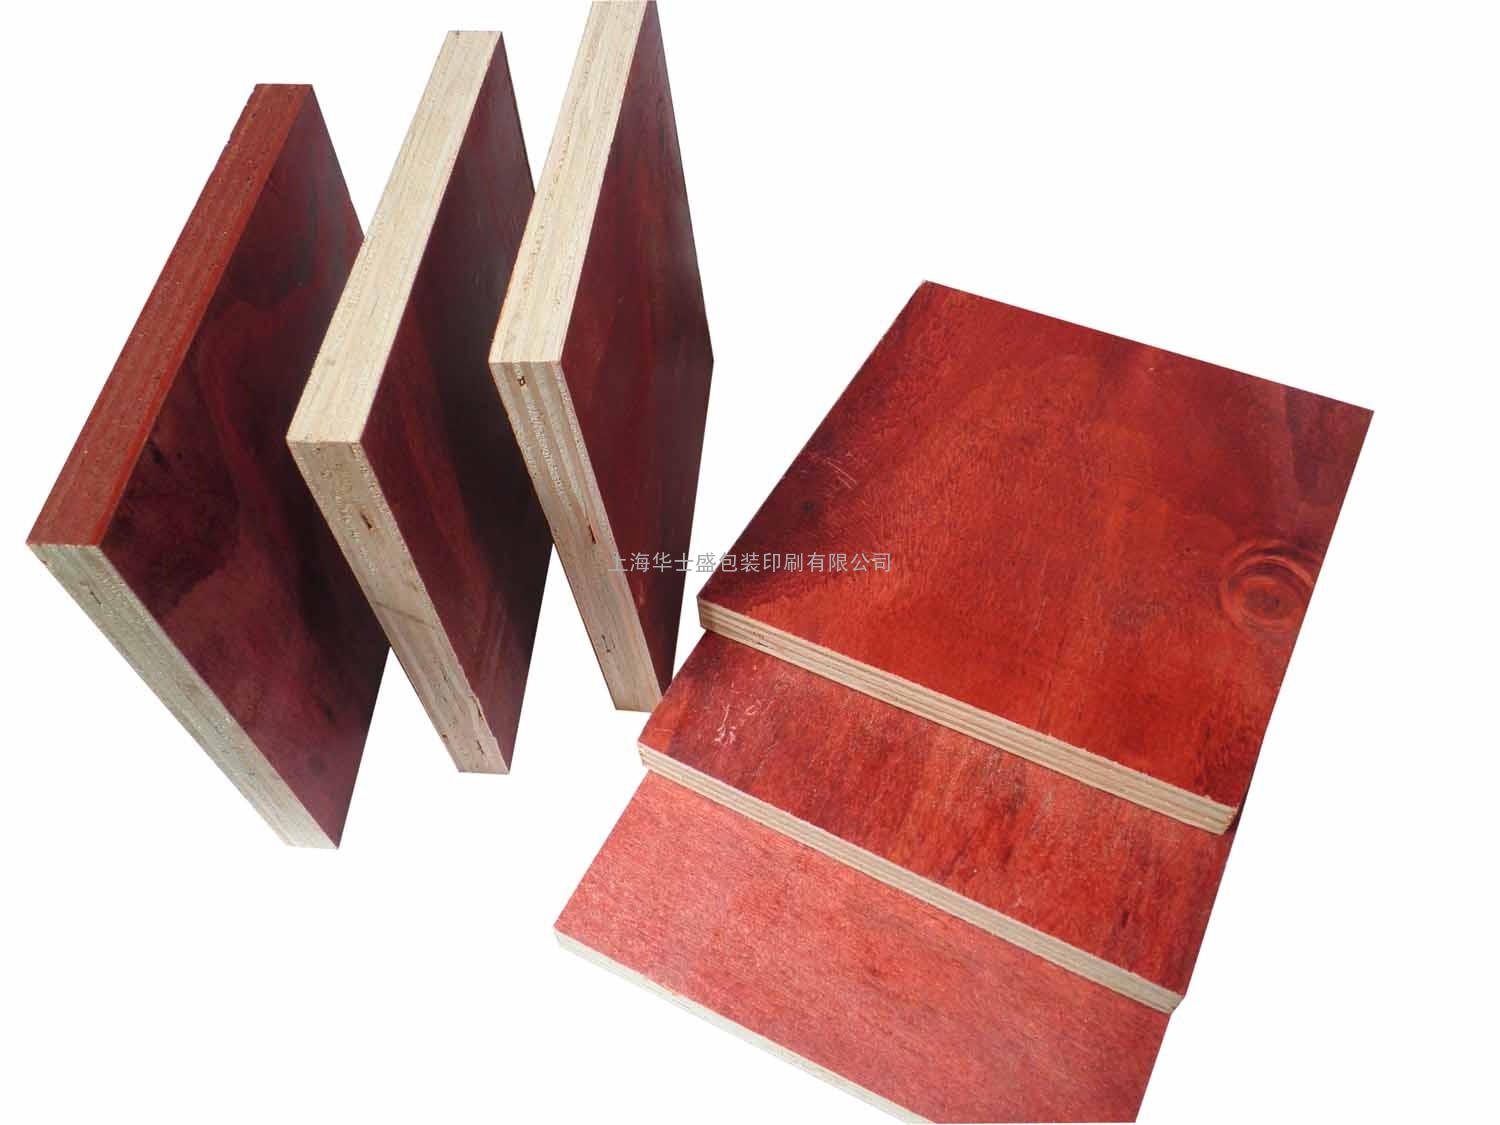 上海建筑工地二手木材回收出售旧木材建筑模板建筑木方批发出售二手建筑模板木方出售浦东新区、高行镇、高东